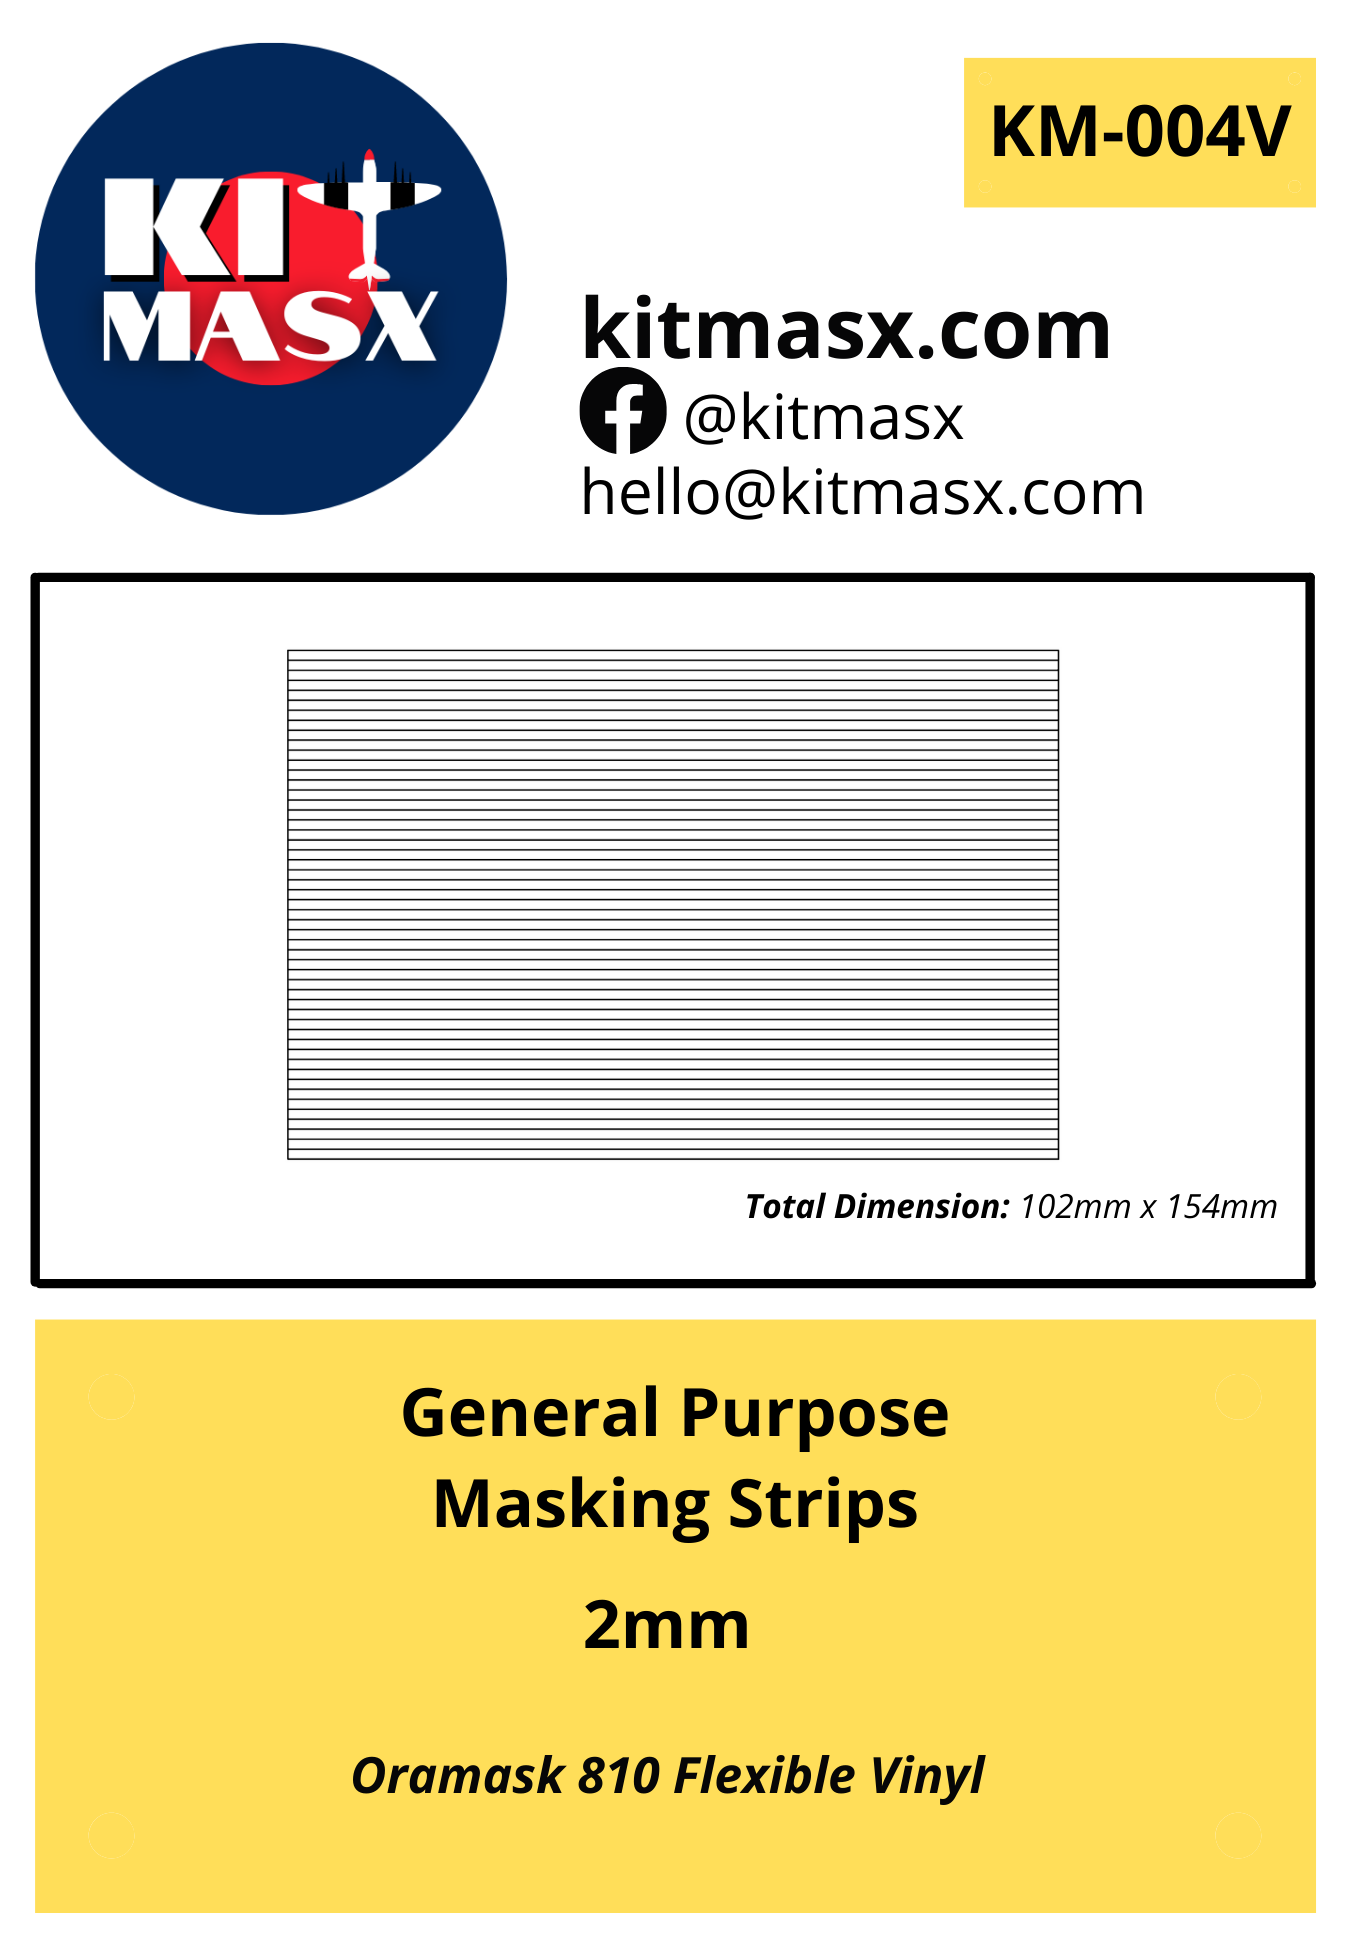 General Purpose Masking Strips 2mm Painting Masks